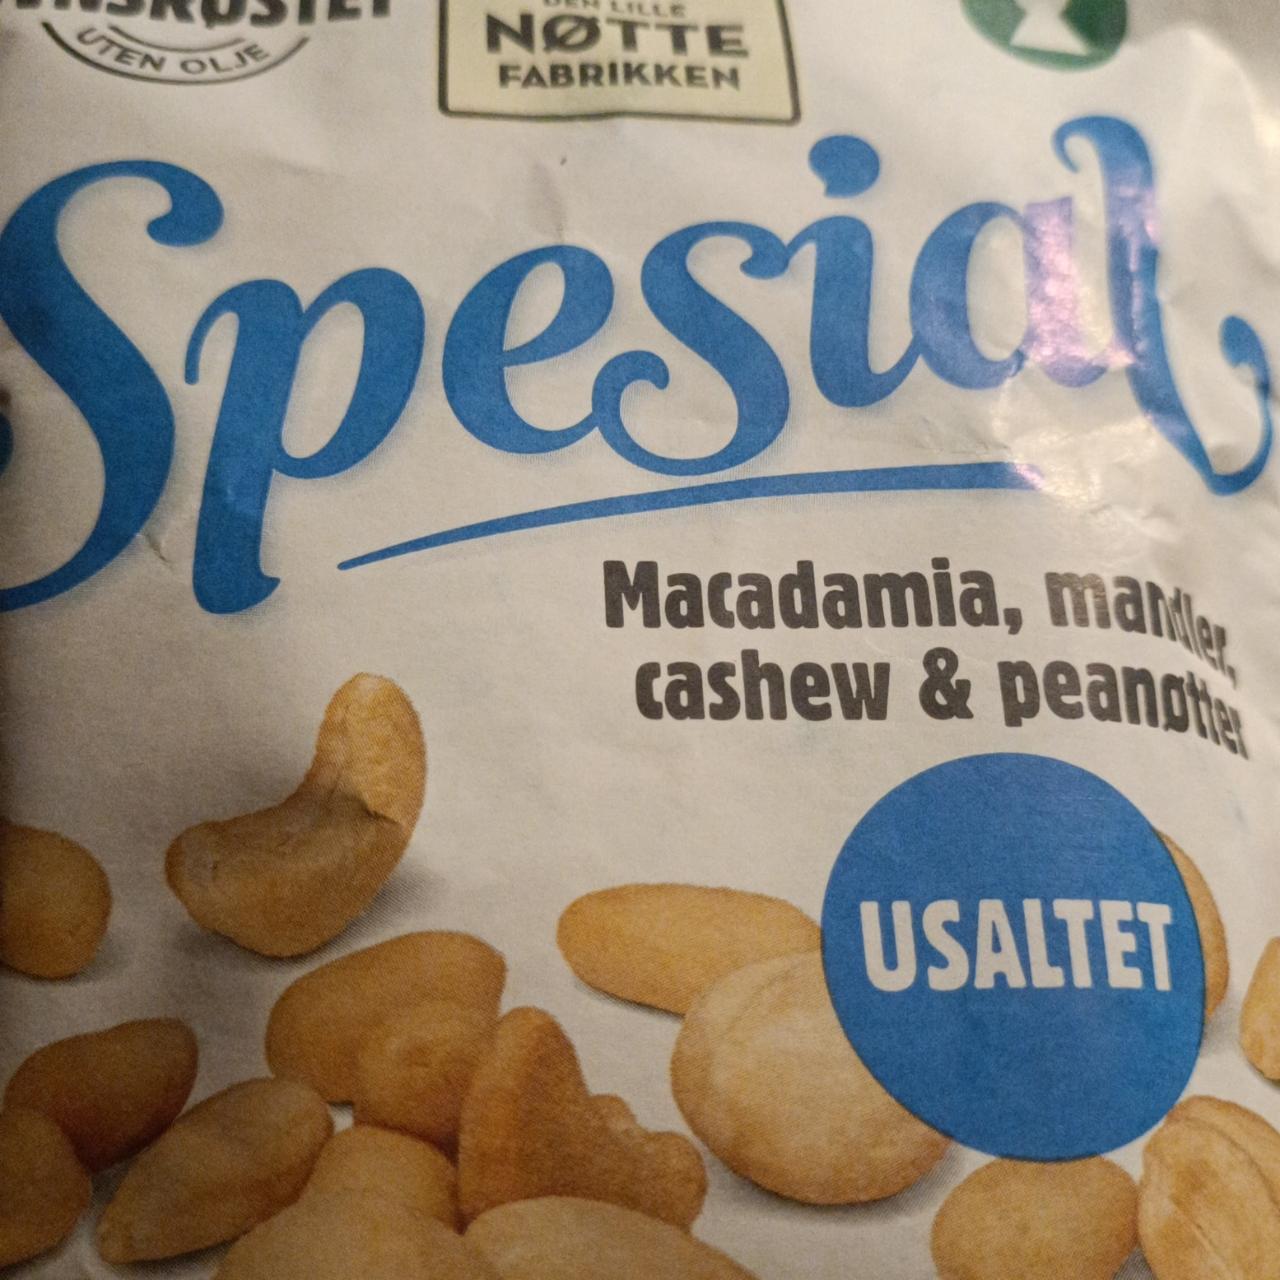 Fotografie - Spesial Macadamia, Mandler, Cashew&peanøtter Usaltet Nøtter Fabrikken